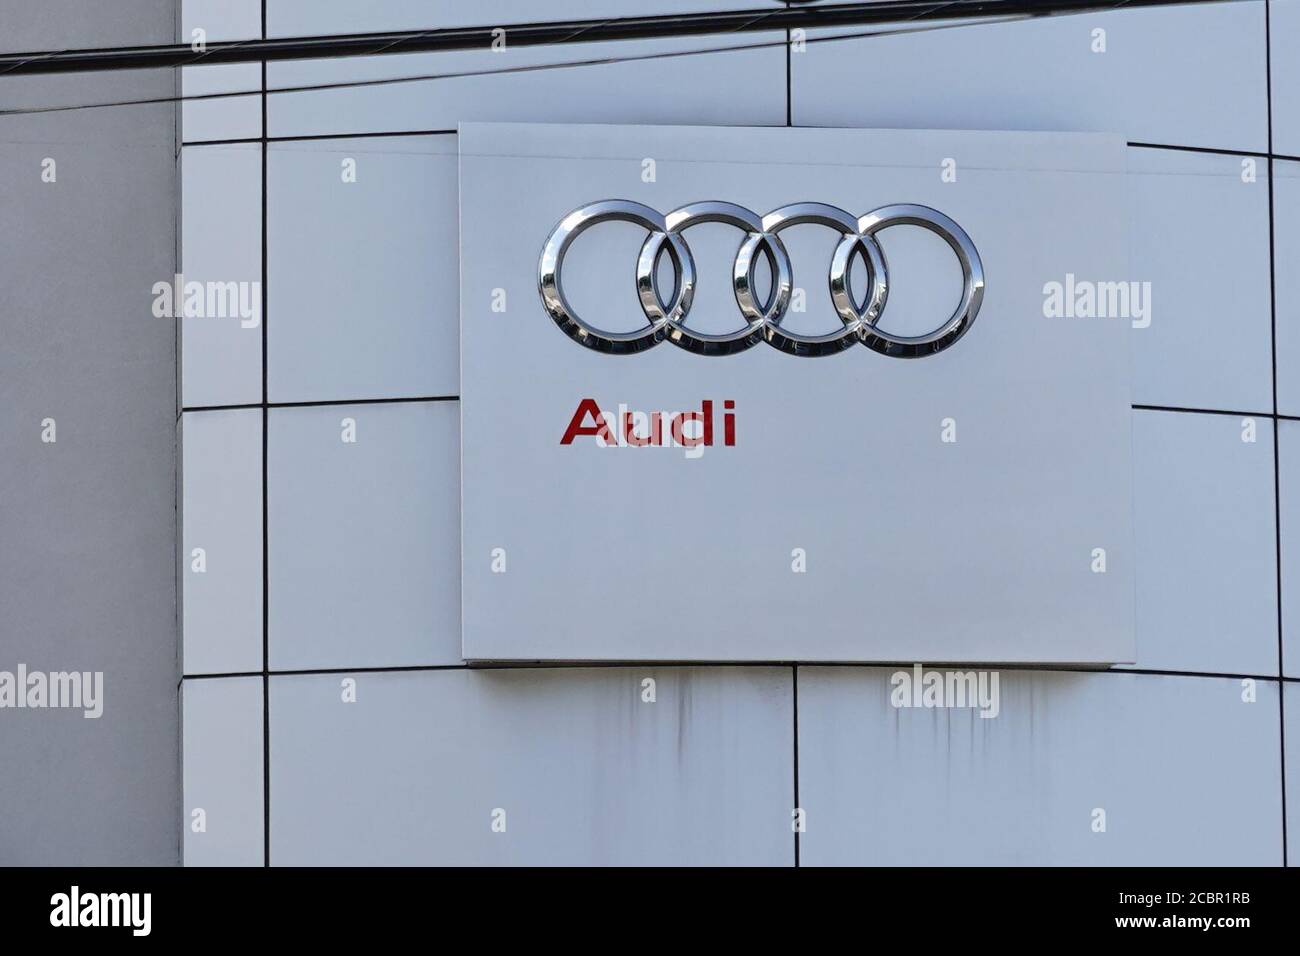 New York, États-Unis. 4 juillet 2020. Le logo de la société Audi est visible dans l'une de ses salles d'exposition. Crédit : John Nacion/SOPA Images/ZUMA Wire/Alay Live News Banque D'Images